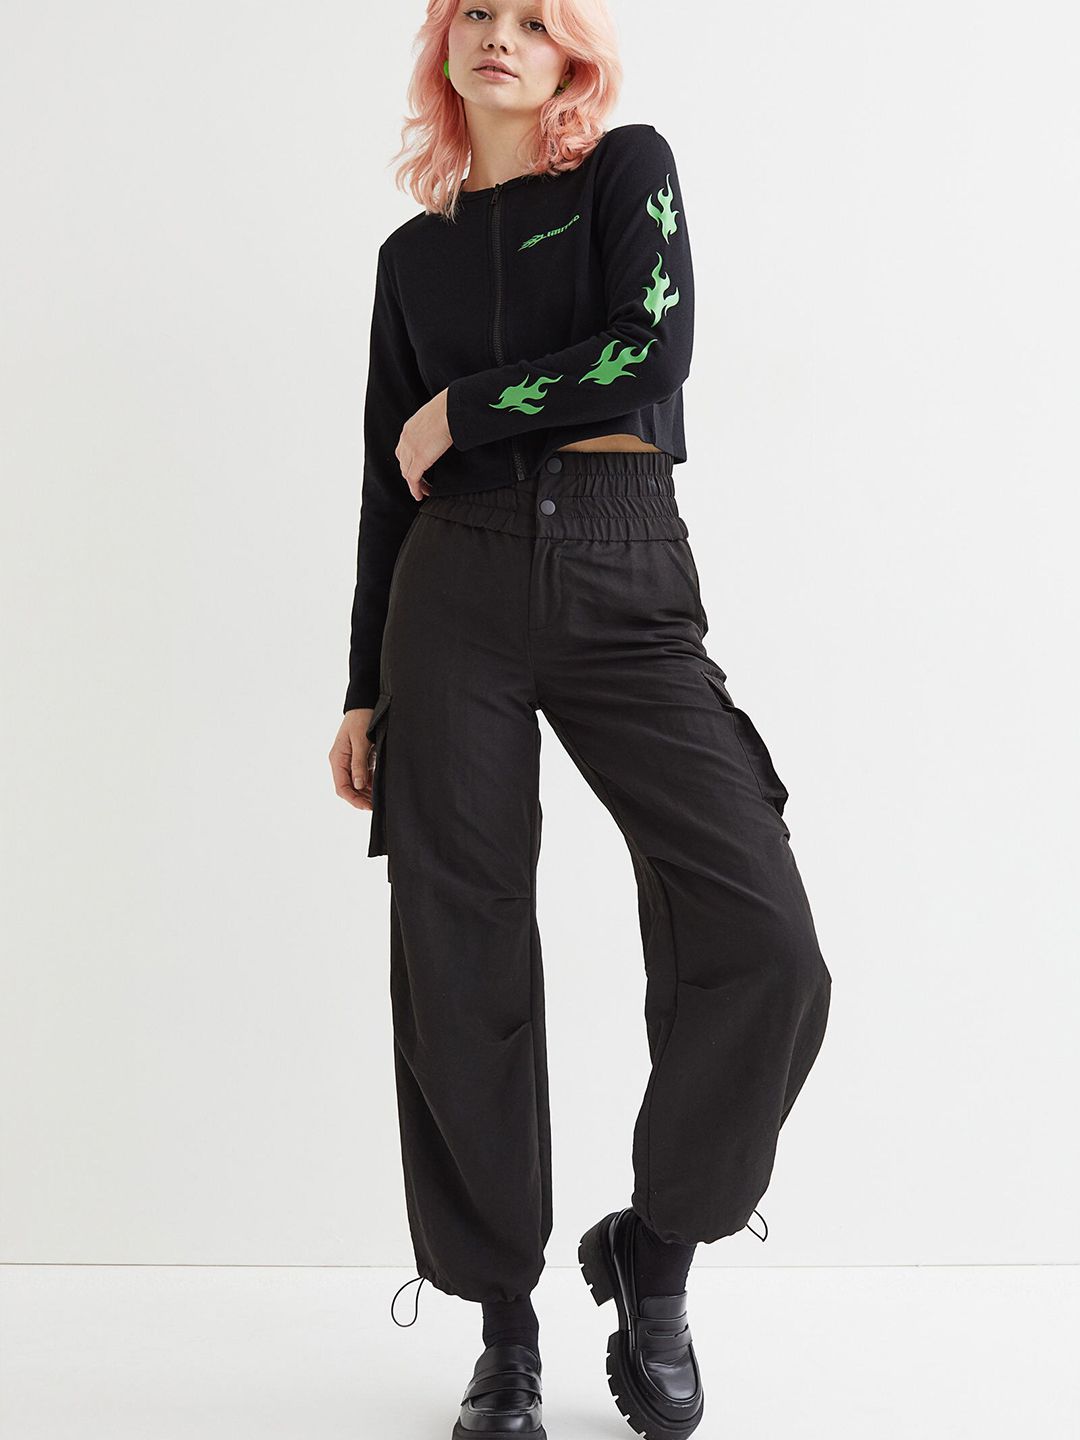 H&M Women Black Zip-Front Sweatshirt Price in India